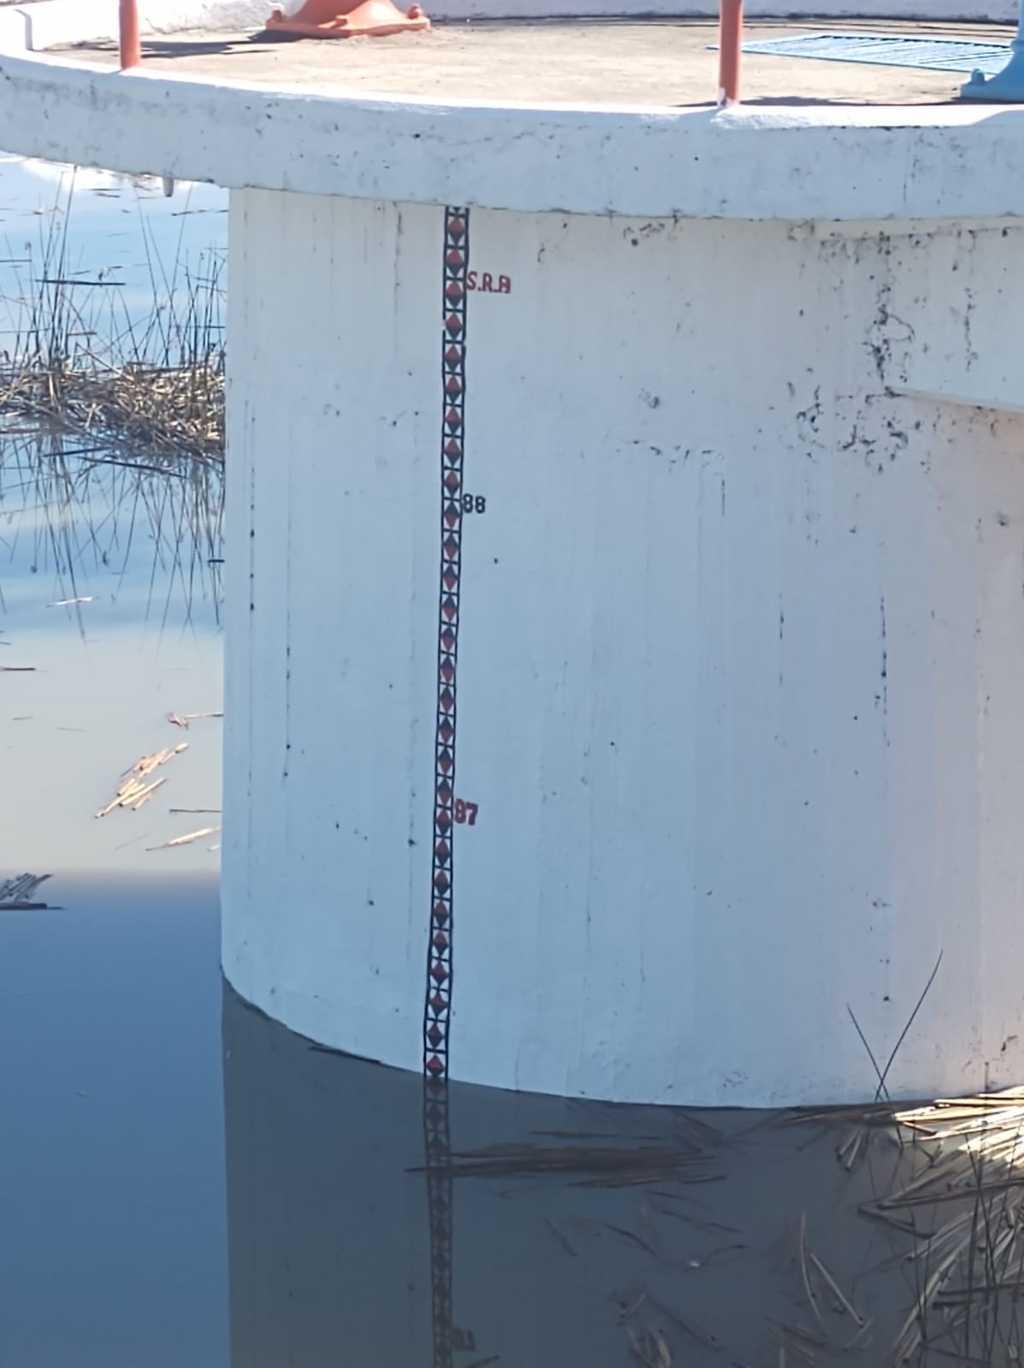 La presa San José llegó a su nivel máximo 91% y no hay alarma de desbordamiento: PCM